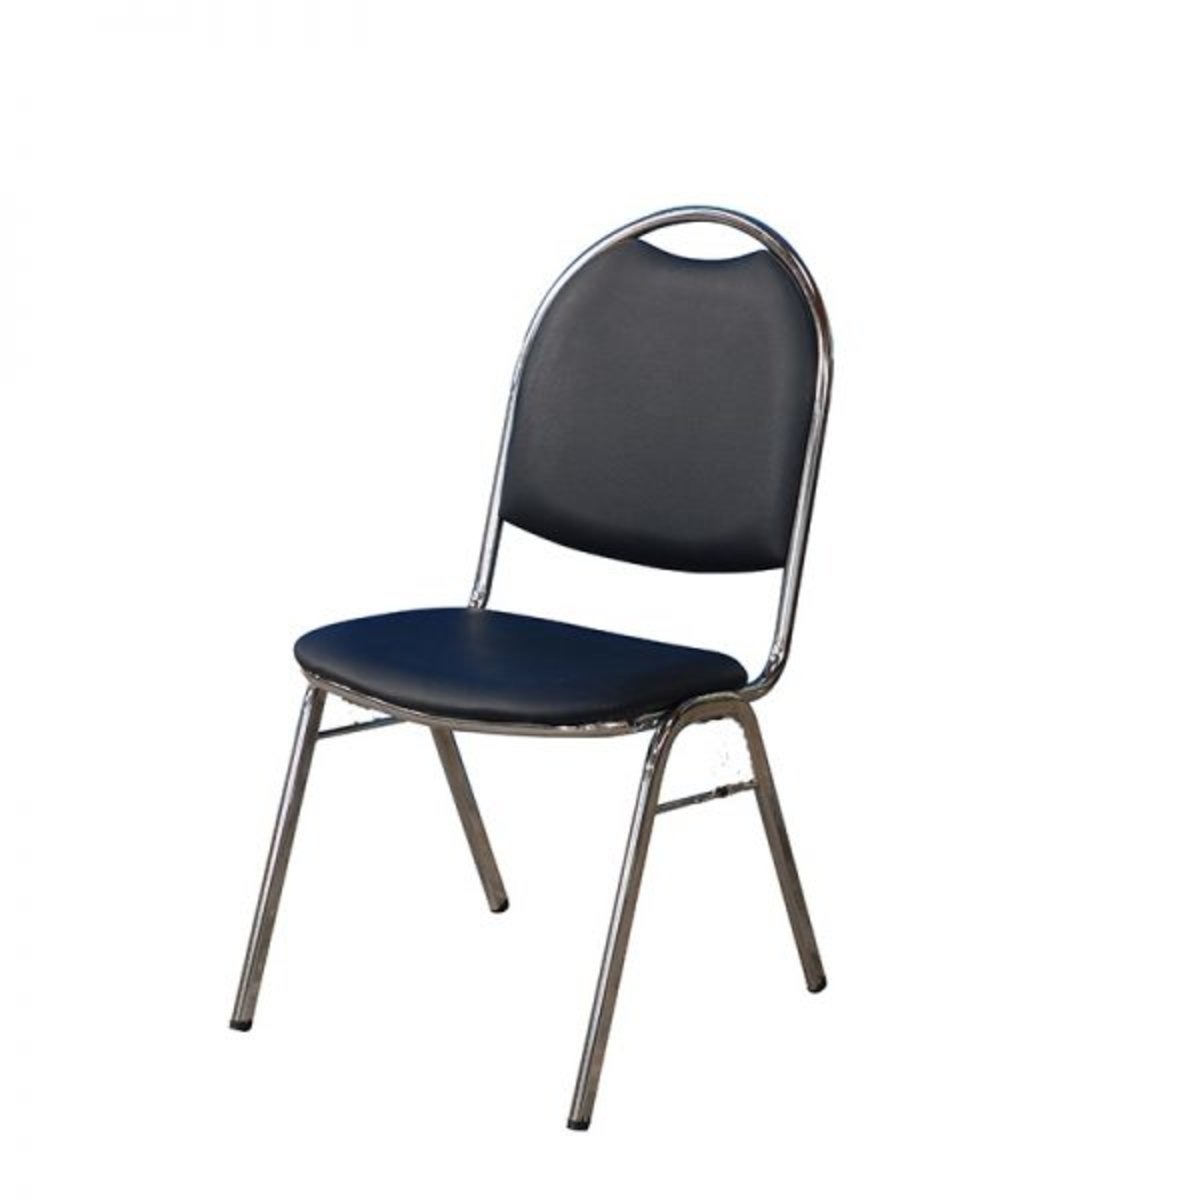 เก้าอี้จัดเลี้ยง รุ่น C 107 สีดำ - NocNoc